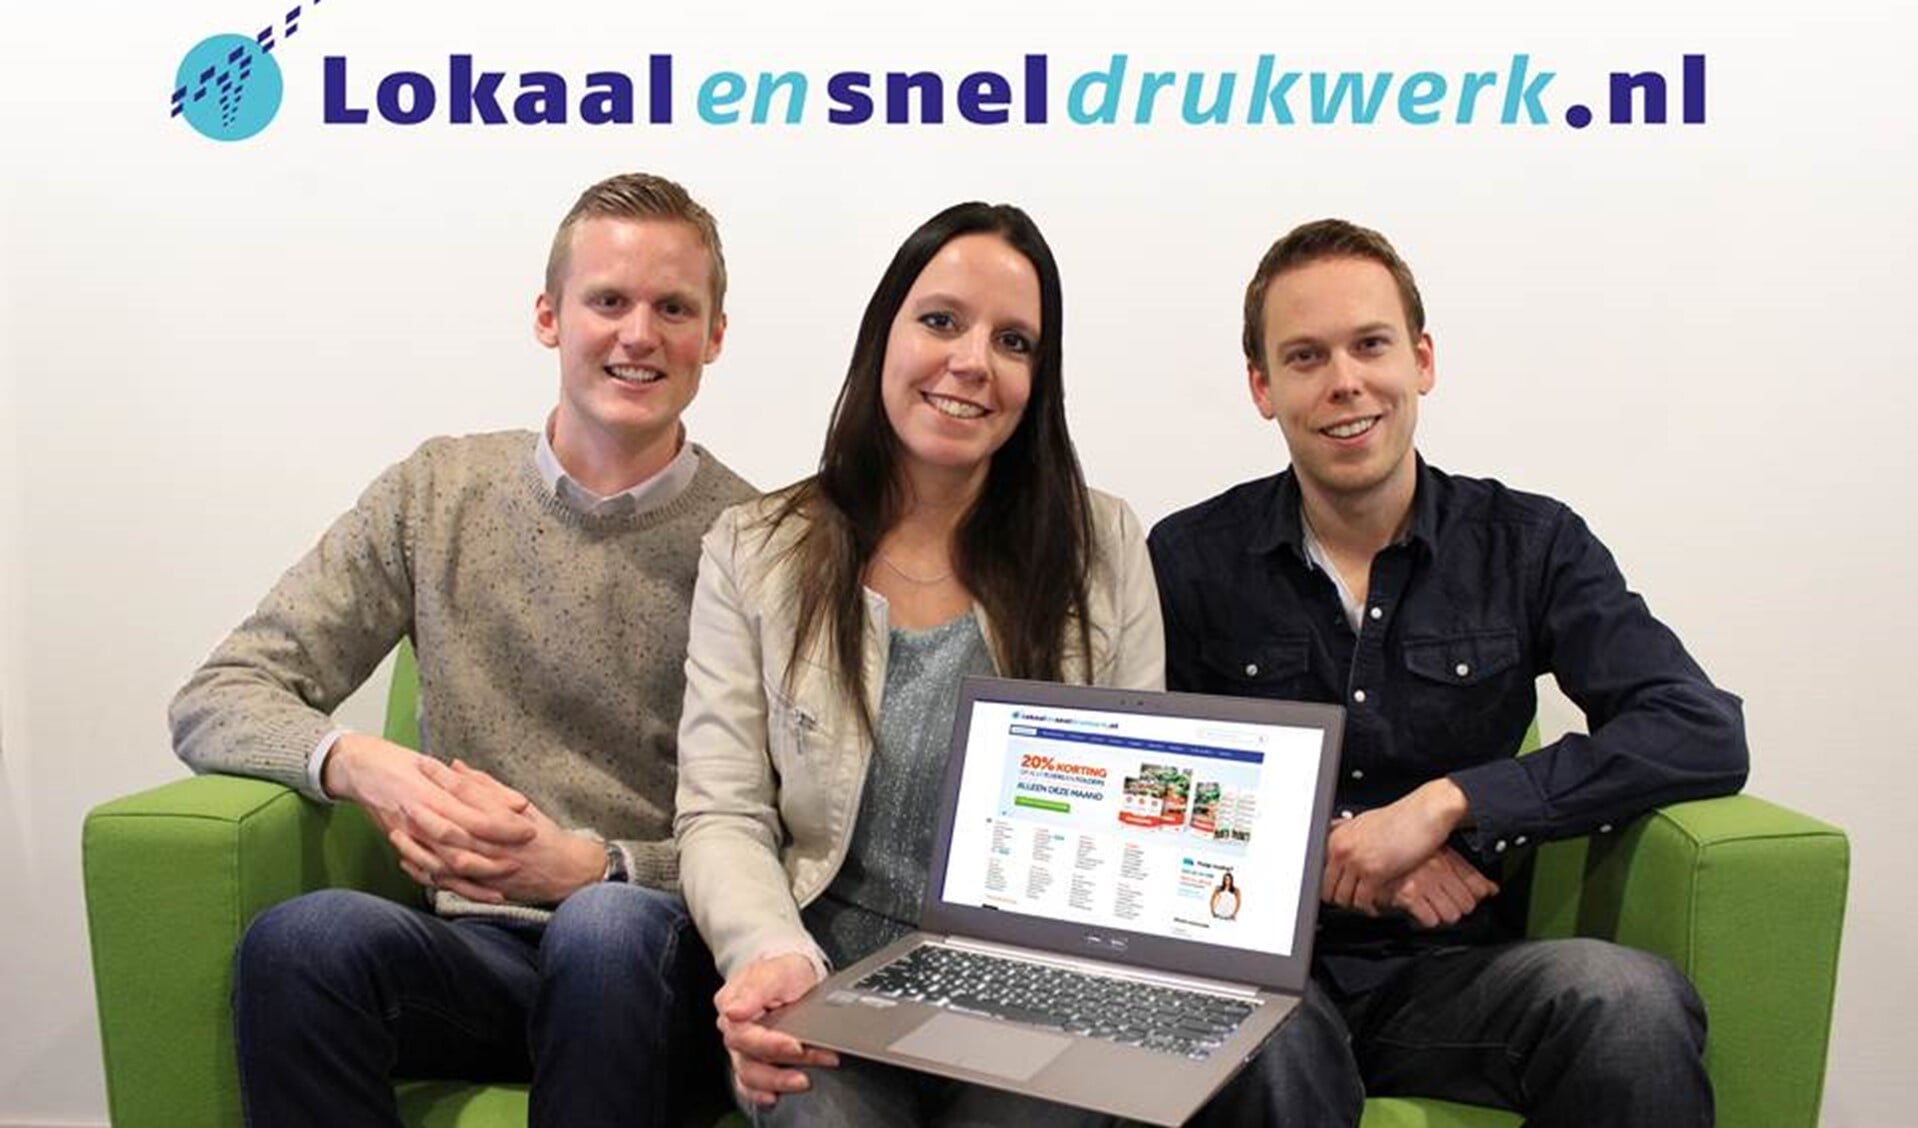 Onze Edwin, Mariska en Steve staan klanten van lokaalensneldrukwerk.nl met raad en daad bij.